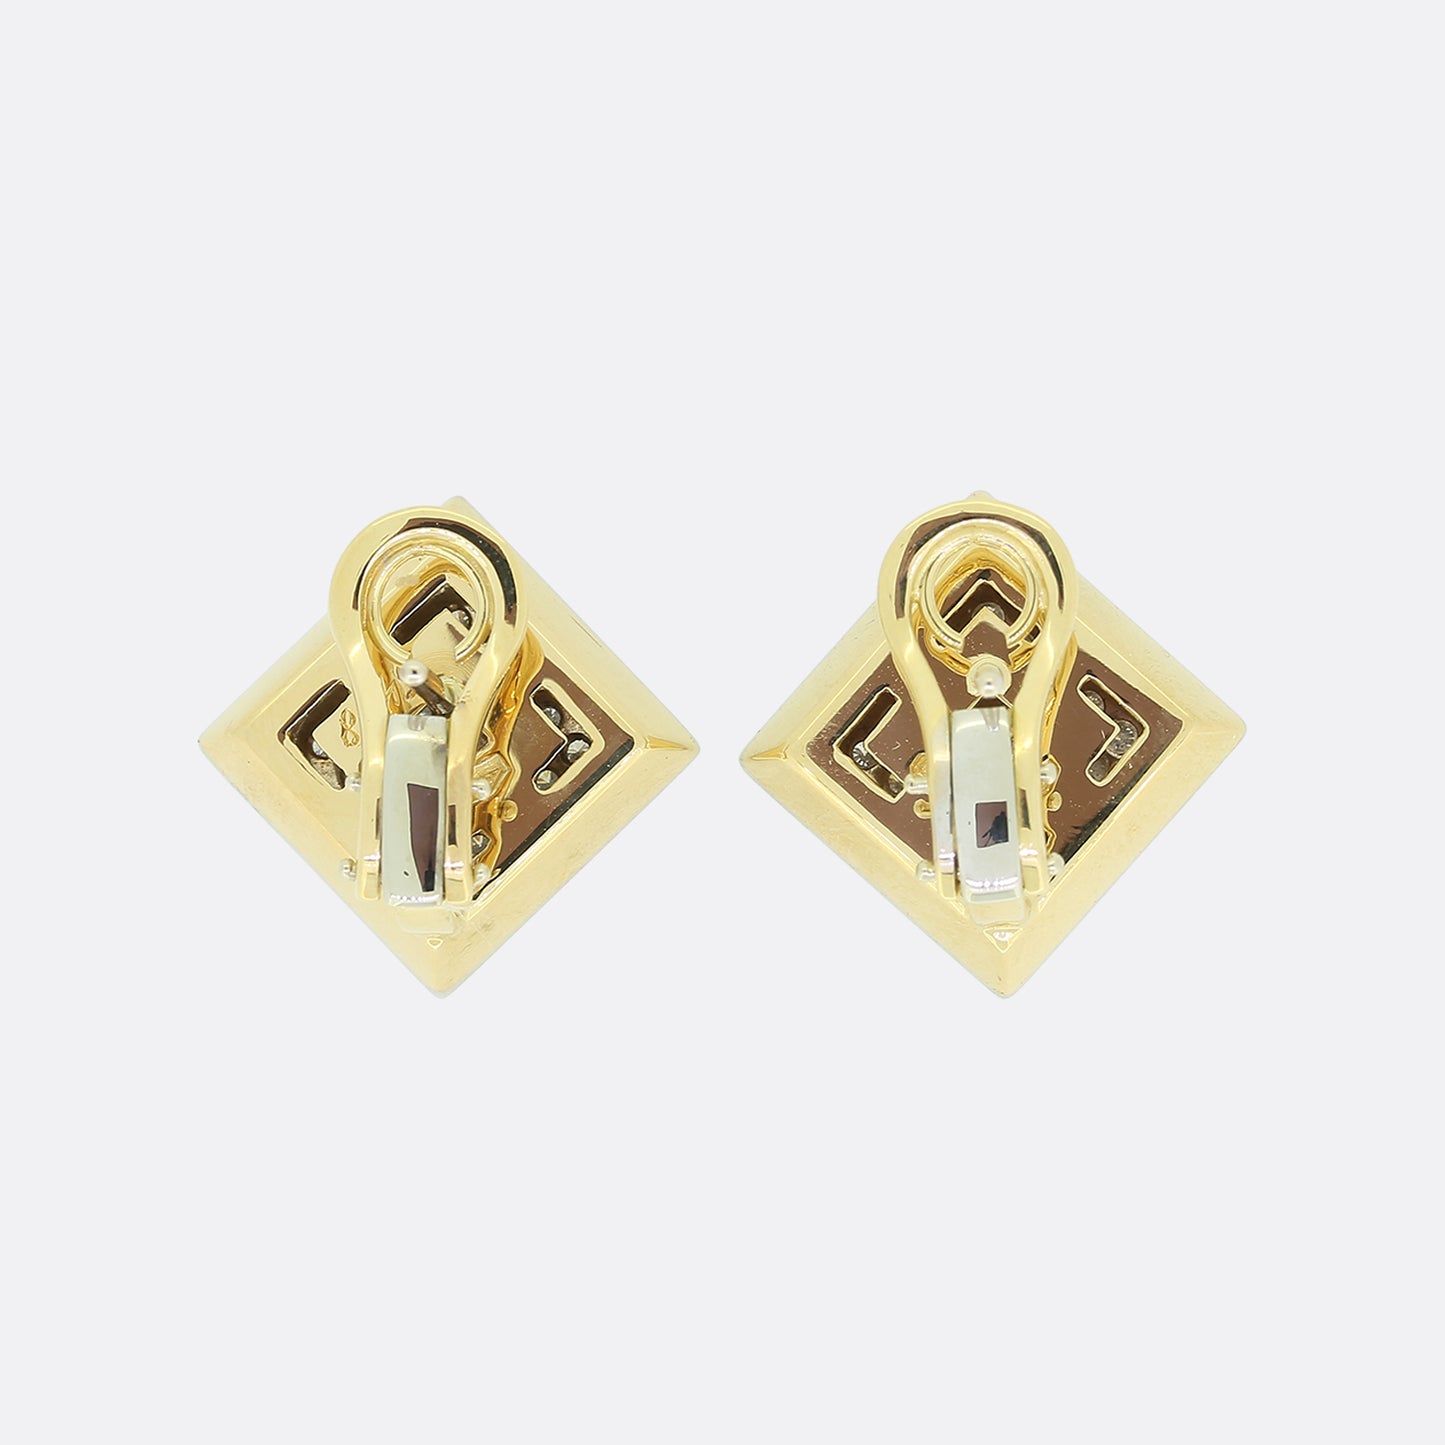 Wempe 0.75 Carat Diamond Earrings